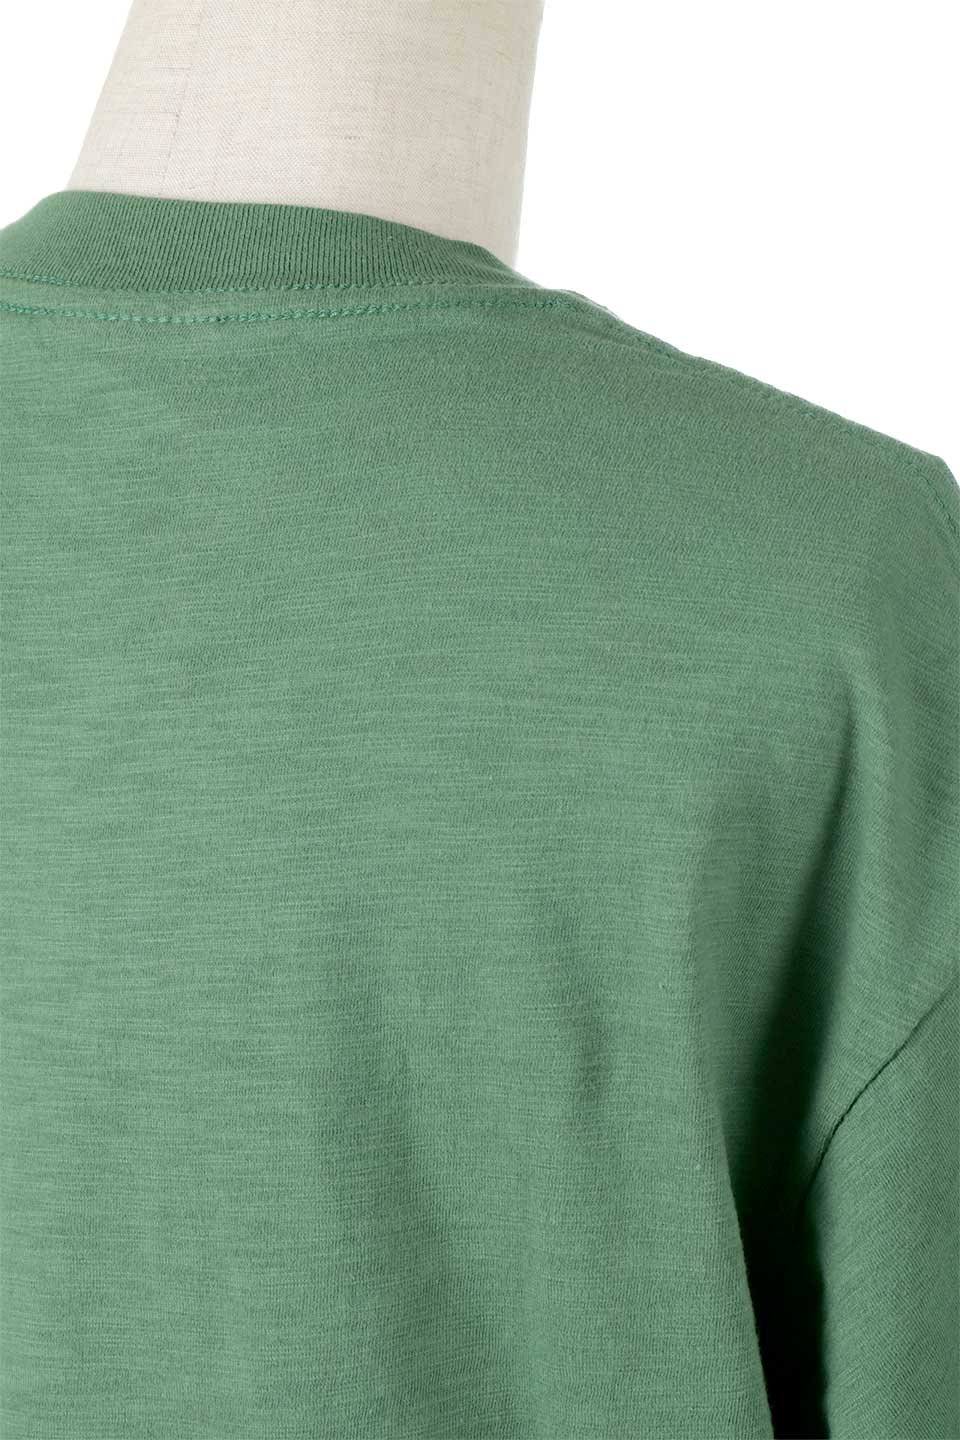 SlubCottonCrackPrintedTeeソフトスラブ・クラックプリントＴシャツ大人カジュアルに最適な海外ファッションのothers（その他インポートアイテム）のトップスやＴシャツ。ムラ感のあるスラブ糸を丁寧に編み上げたソフトな生地を使用したTシャツ。柔らかく表面に凹凸があるので汗をかく時期でも快適なアイテムです。/main-21